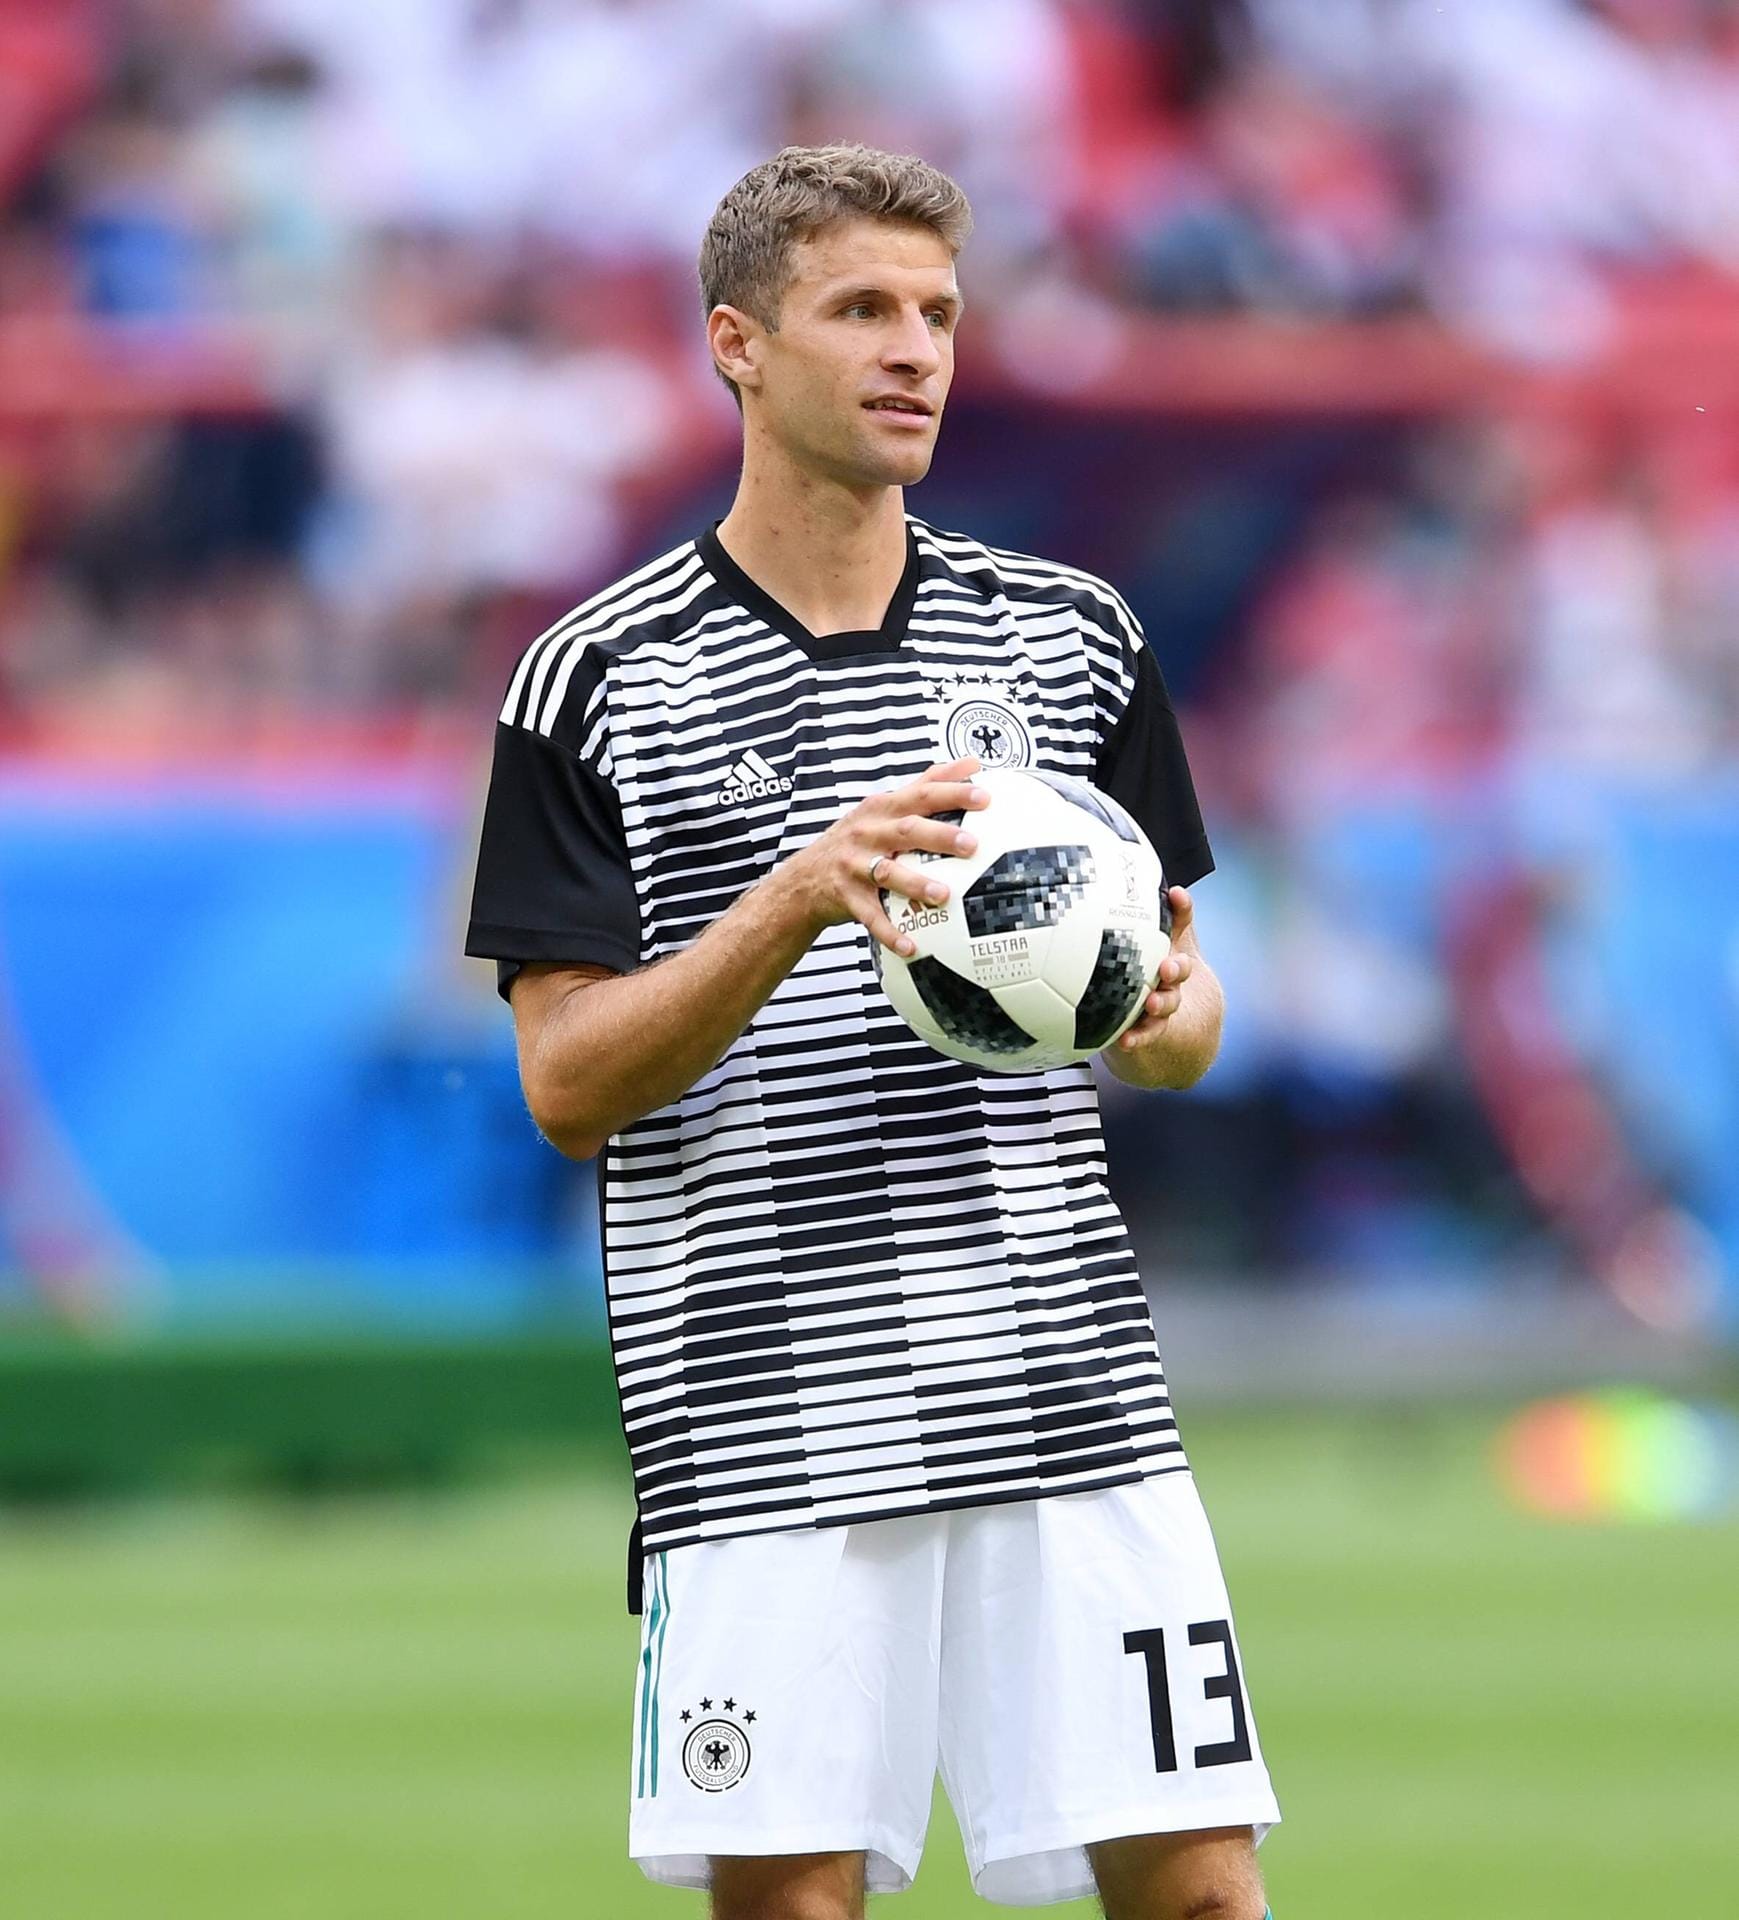 Thomas Müller: Der 28-Jährige ist seit dem Jahr 2000 bei Bayern München unter Vertrag. Nach 100 Länderspielen teilte ihm der Bundestrainer nun mit, dass er vorerst auf ihn verzichten wird.